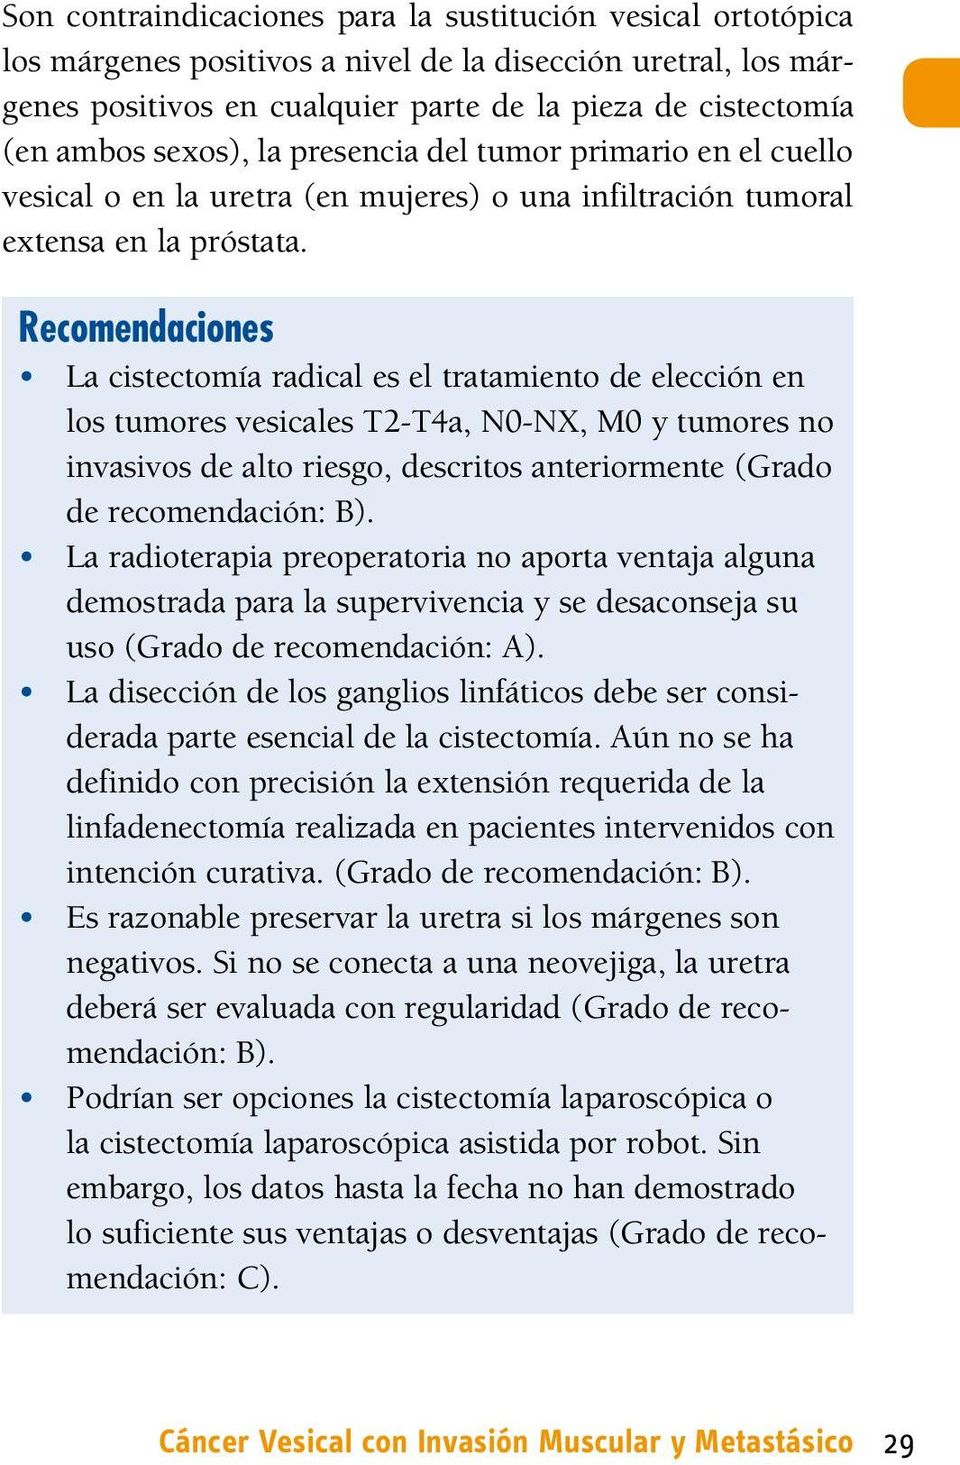 Recomendaciones La cistectomía radical es el tratamiento de elección en los tumores vesicales T2-T4a, N0-NX, M0 y tumores no invasivos de alto riesgo, descritos anteriormente (Grado de recomendación: